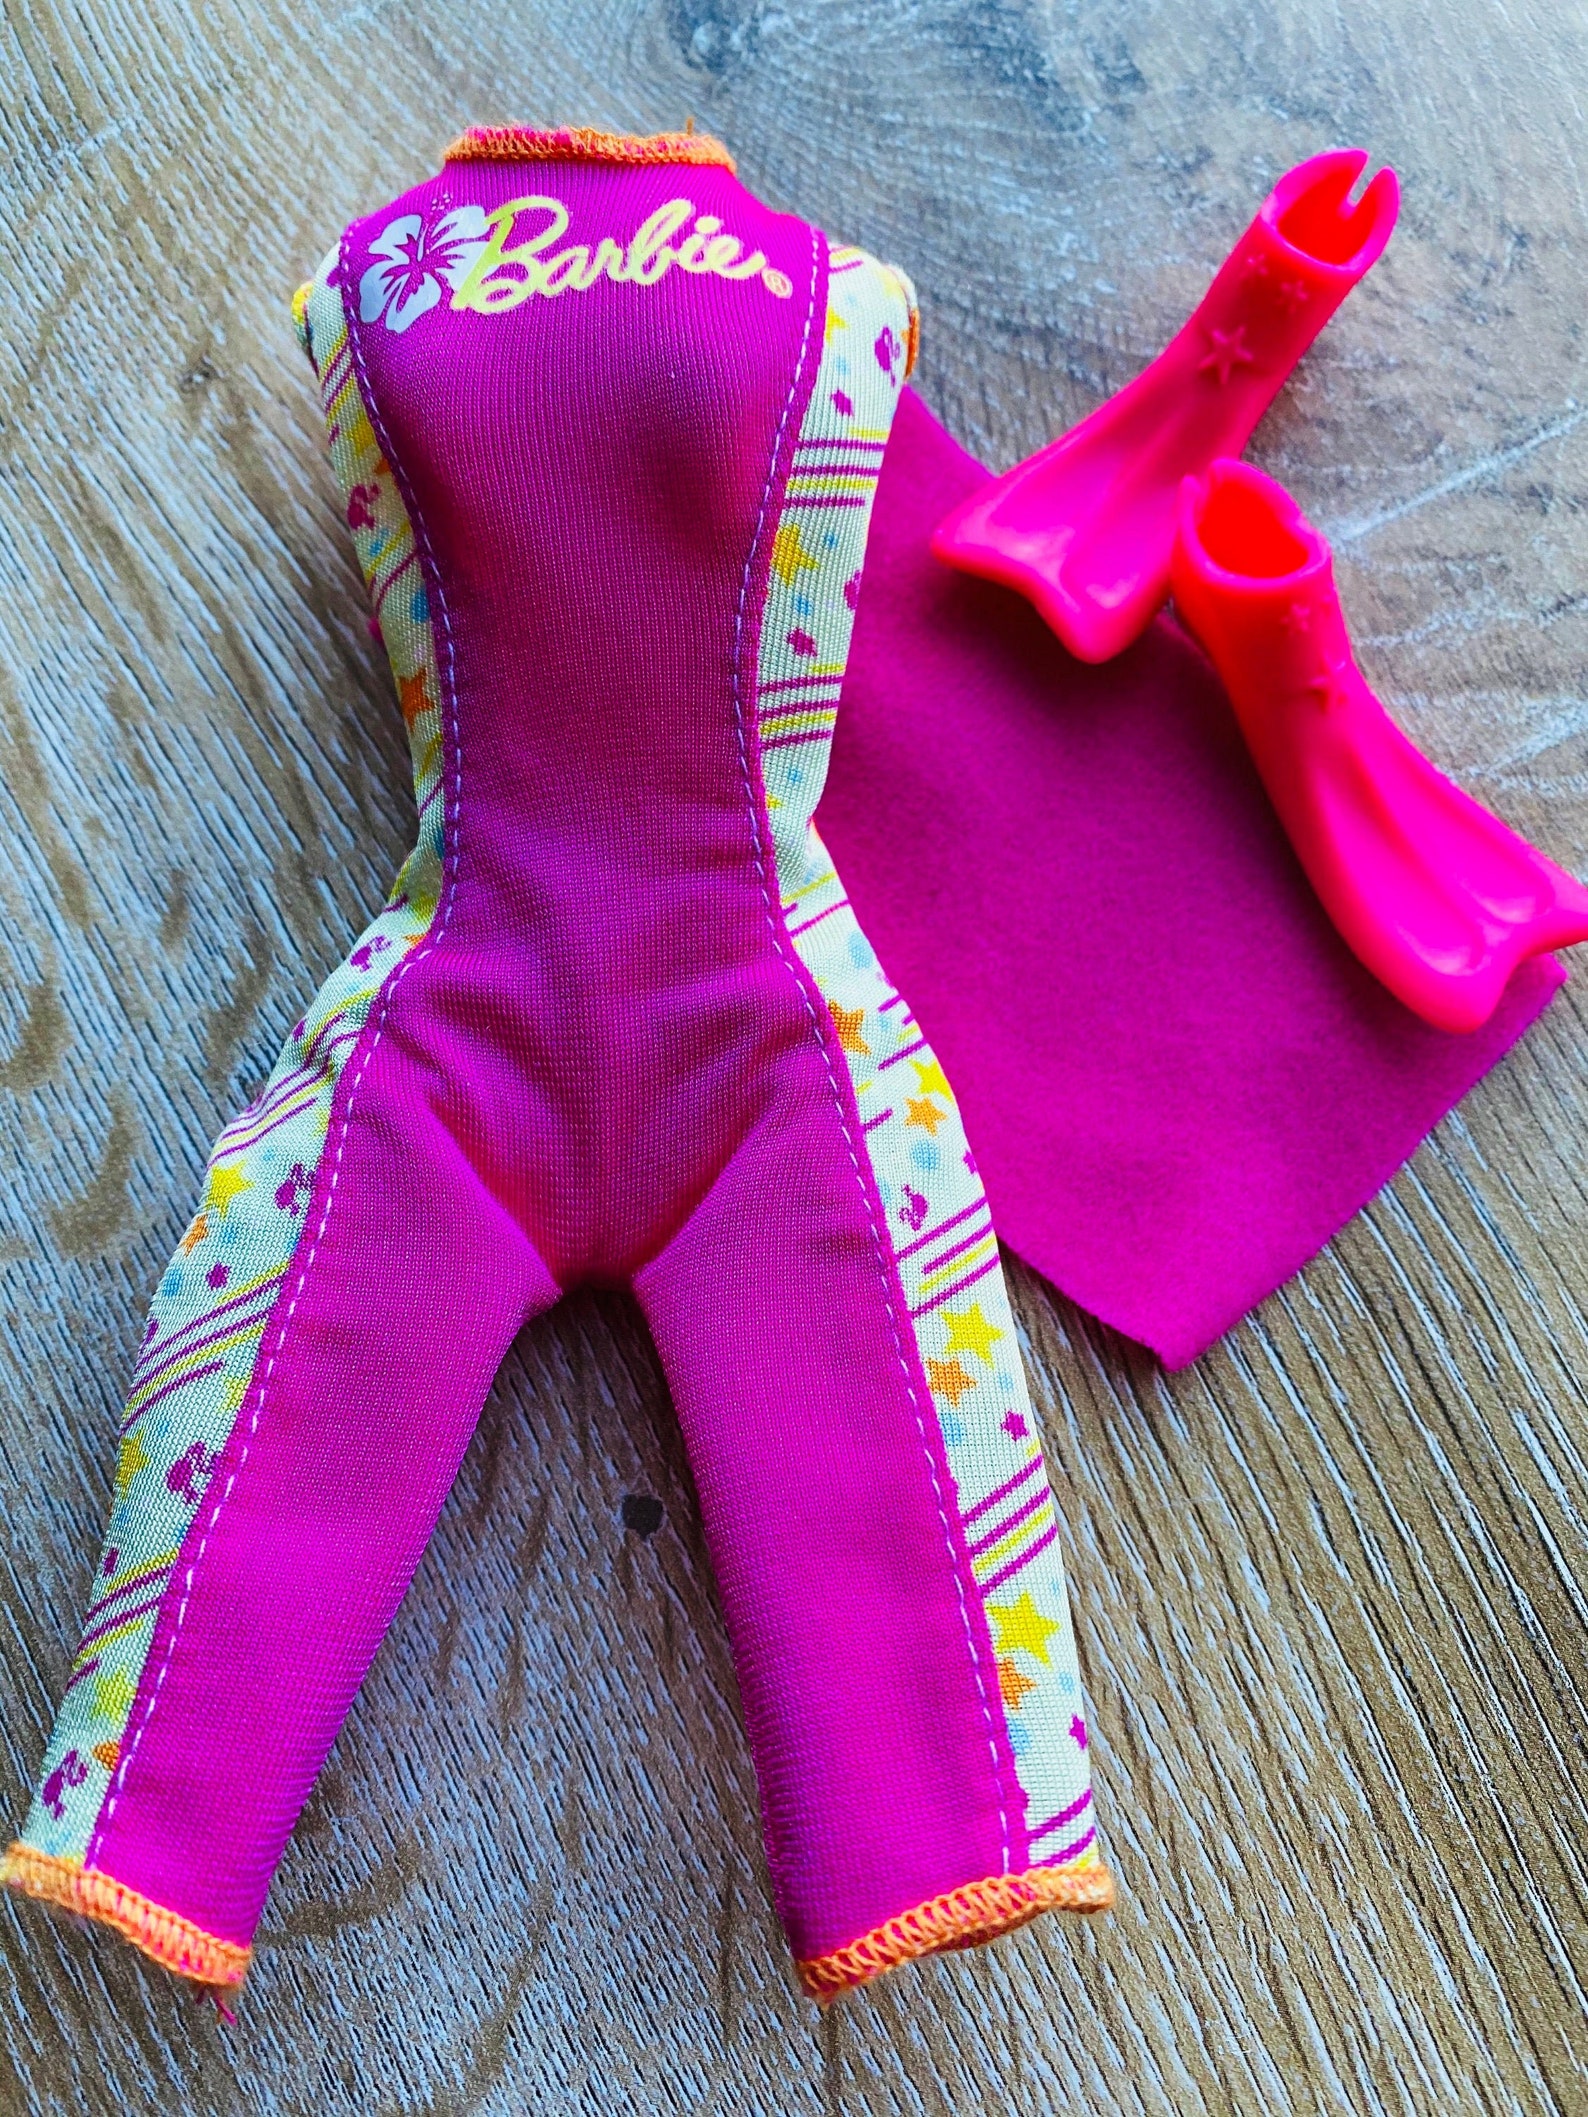 Barbie Doll Clothes Barbie Scuba Wetsuit Includes Pink Etsy Uk